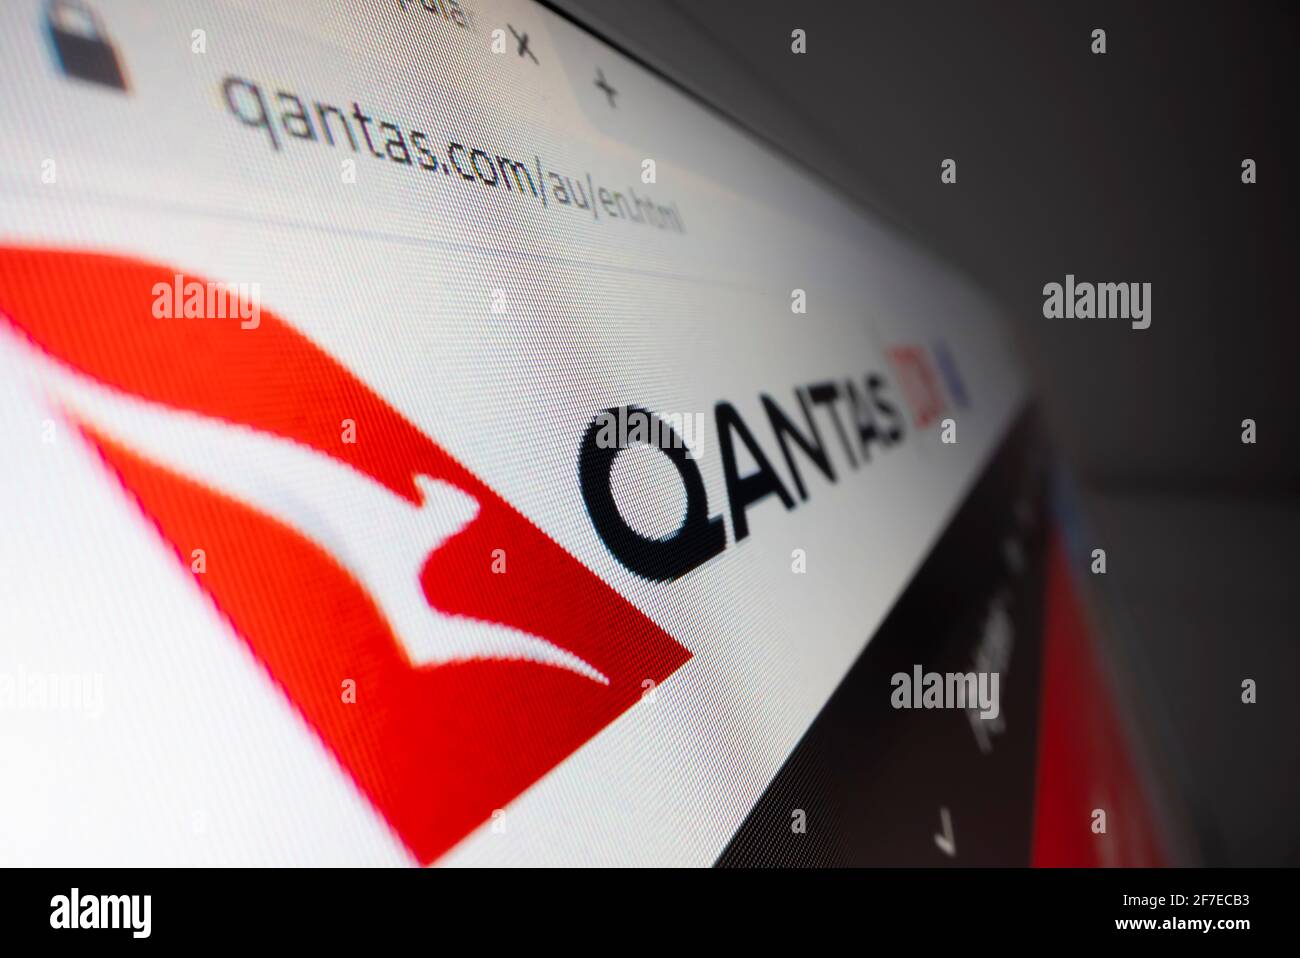 Visualizzazione ravvicinata del logo Qantas sul proprio sito Web Foto Stock